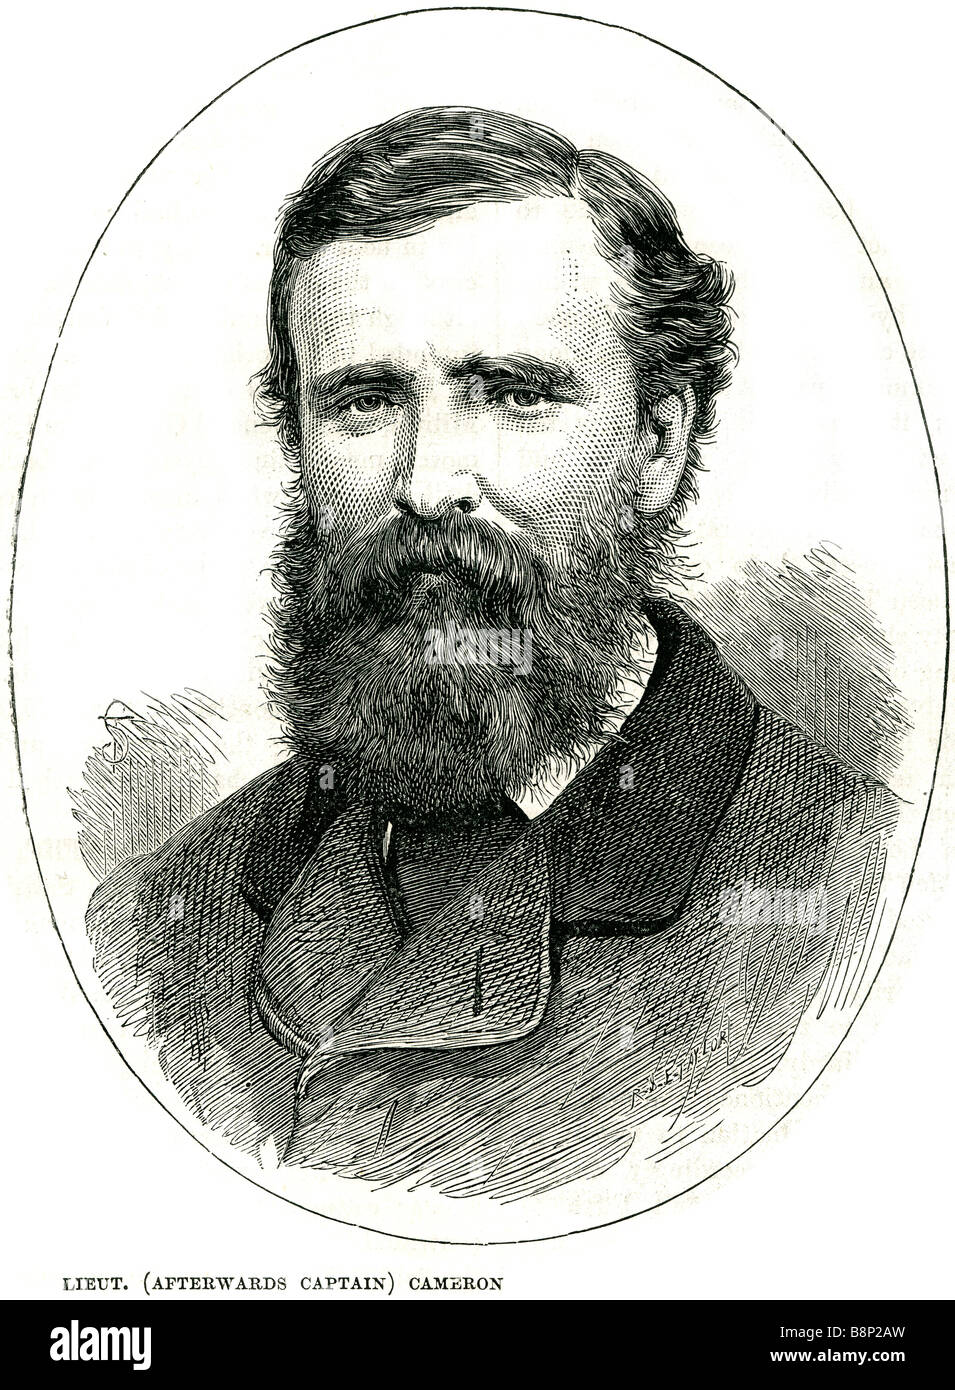 lieut Daniel Cameron captain 1856 Stock Photo